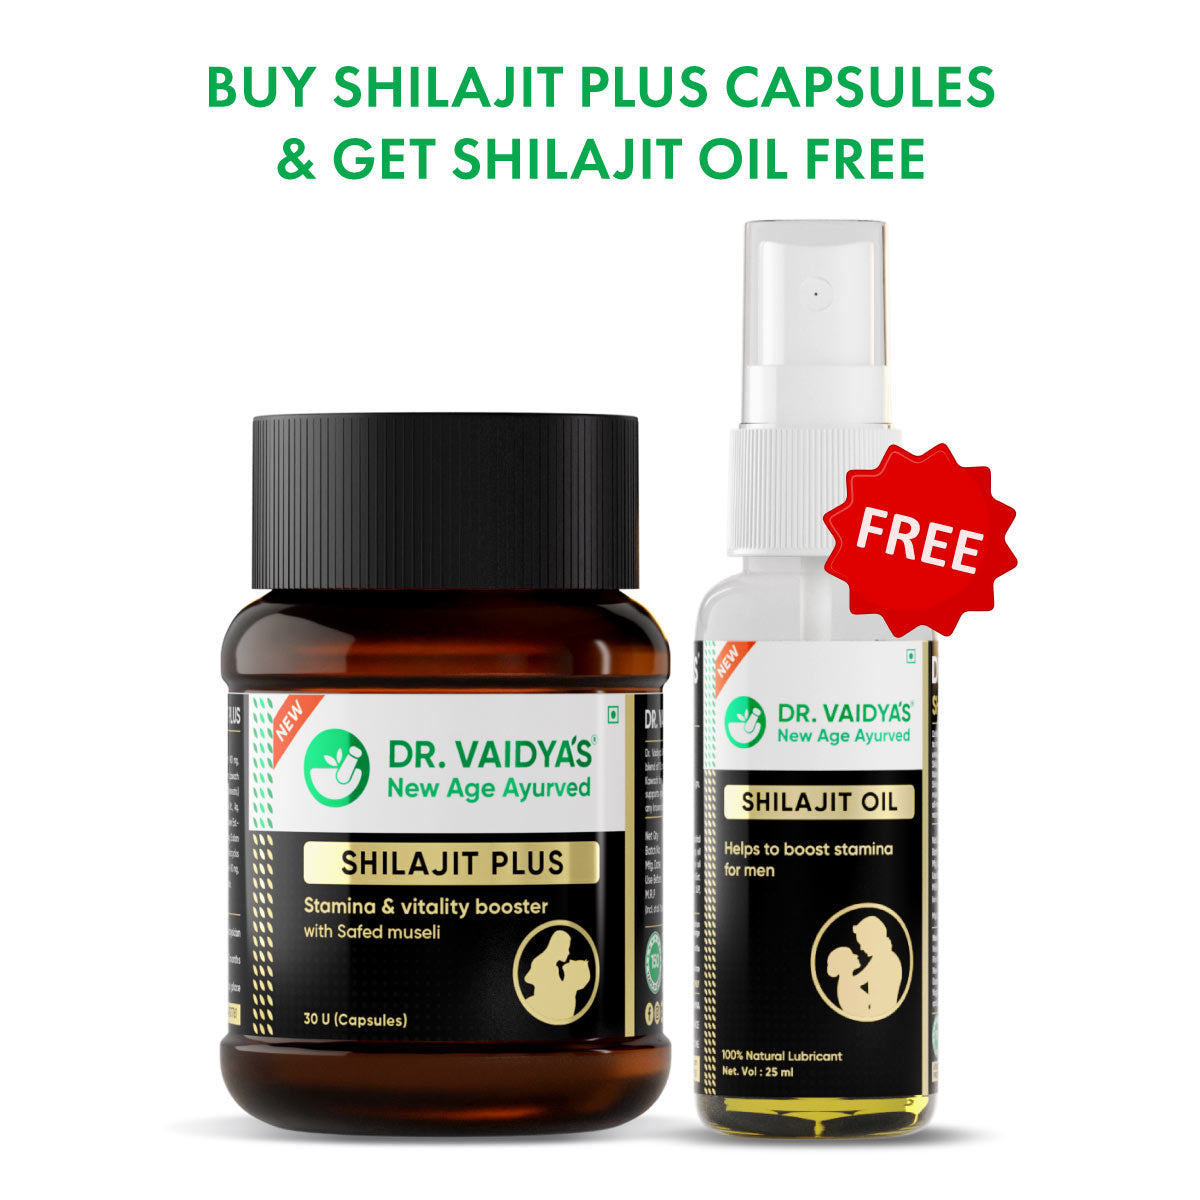 Shilajit Plus + FREE Shilajit Oil